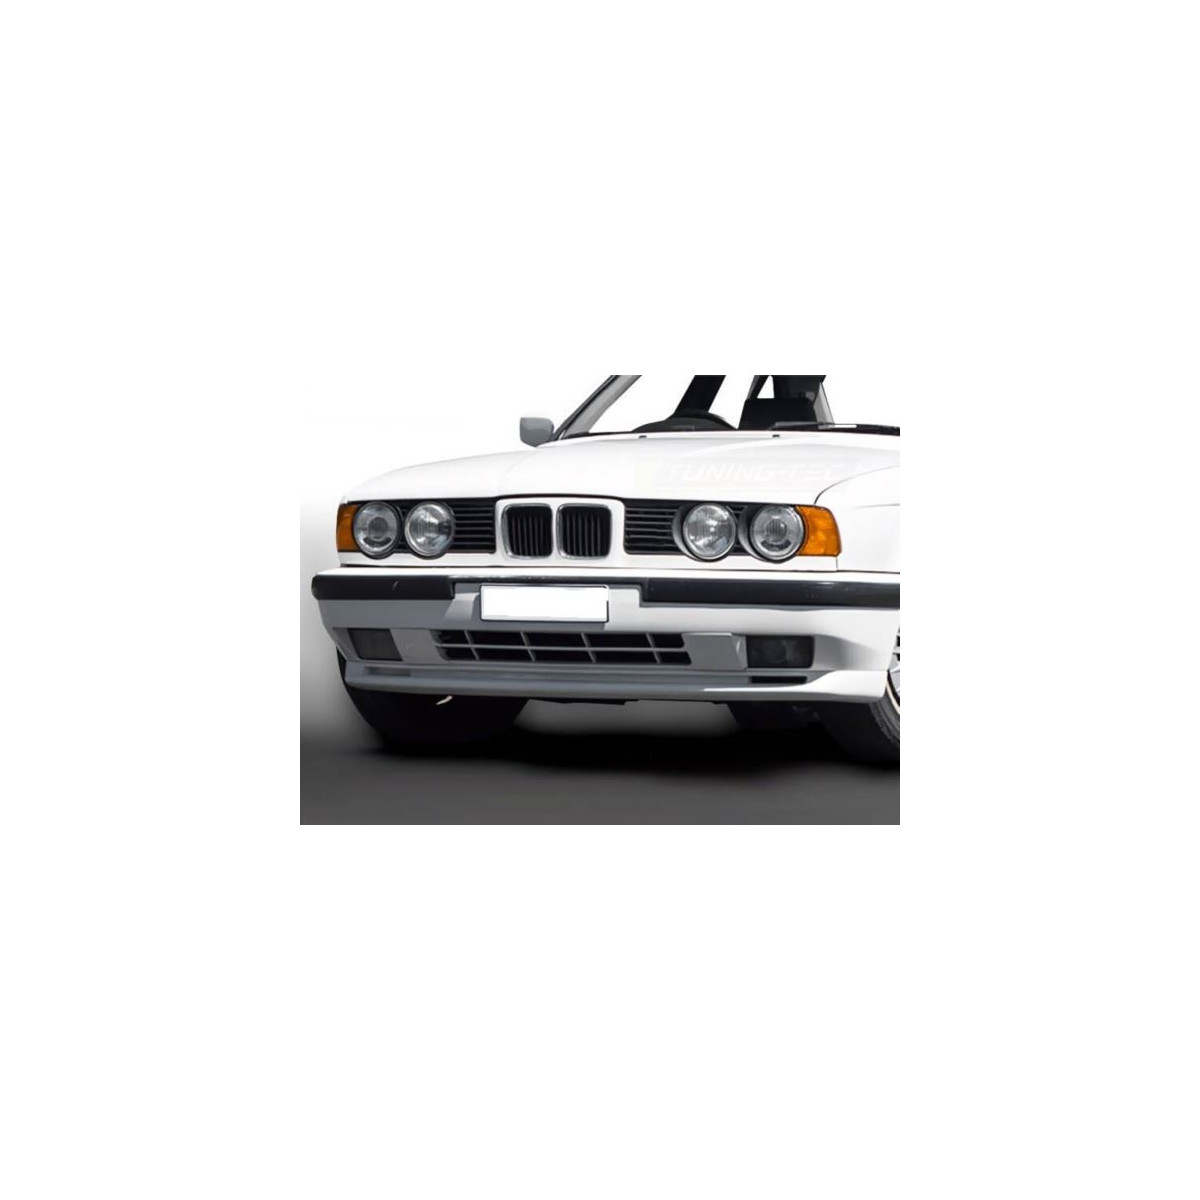 ZDERZAK PRZEDNI BMW E34 87-96 SPORT STYLE